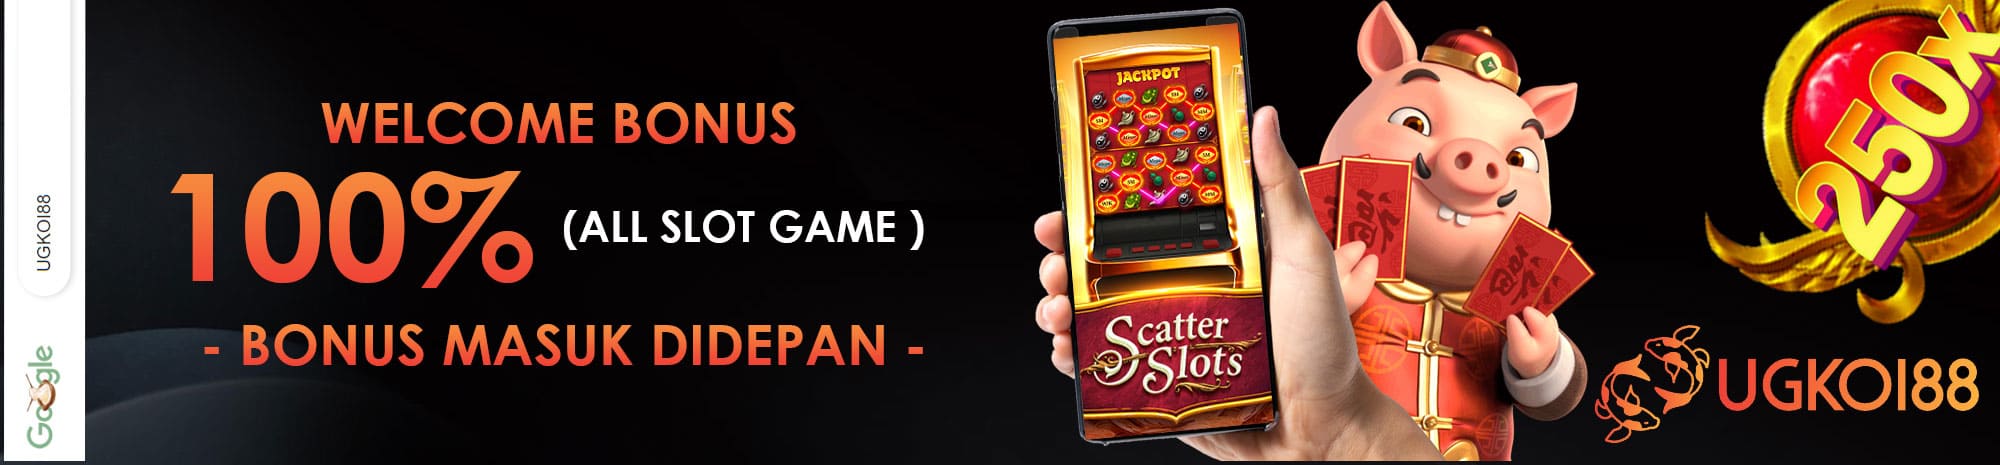 UGKOI88 Situs Slot Game Online Gacor Pulsa Tanpa Potongan